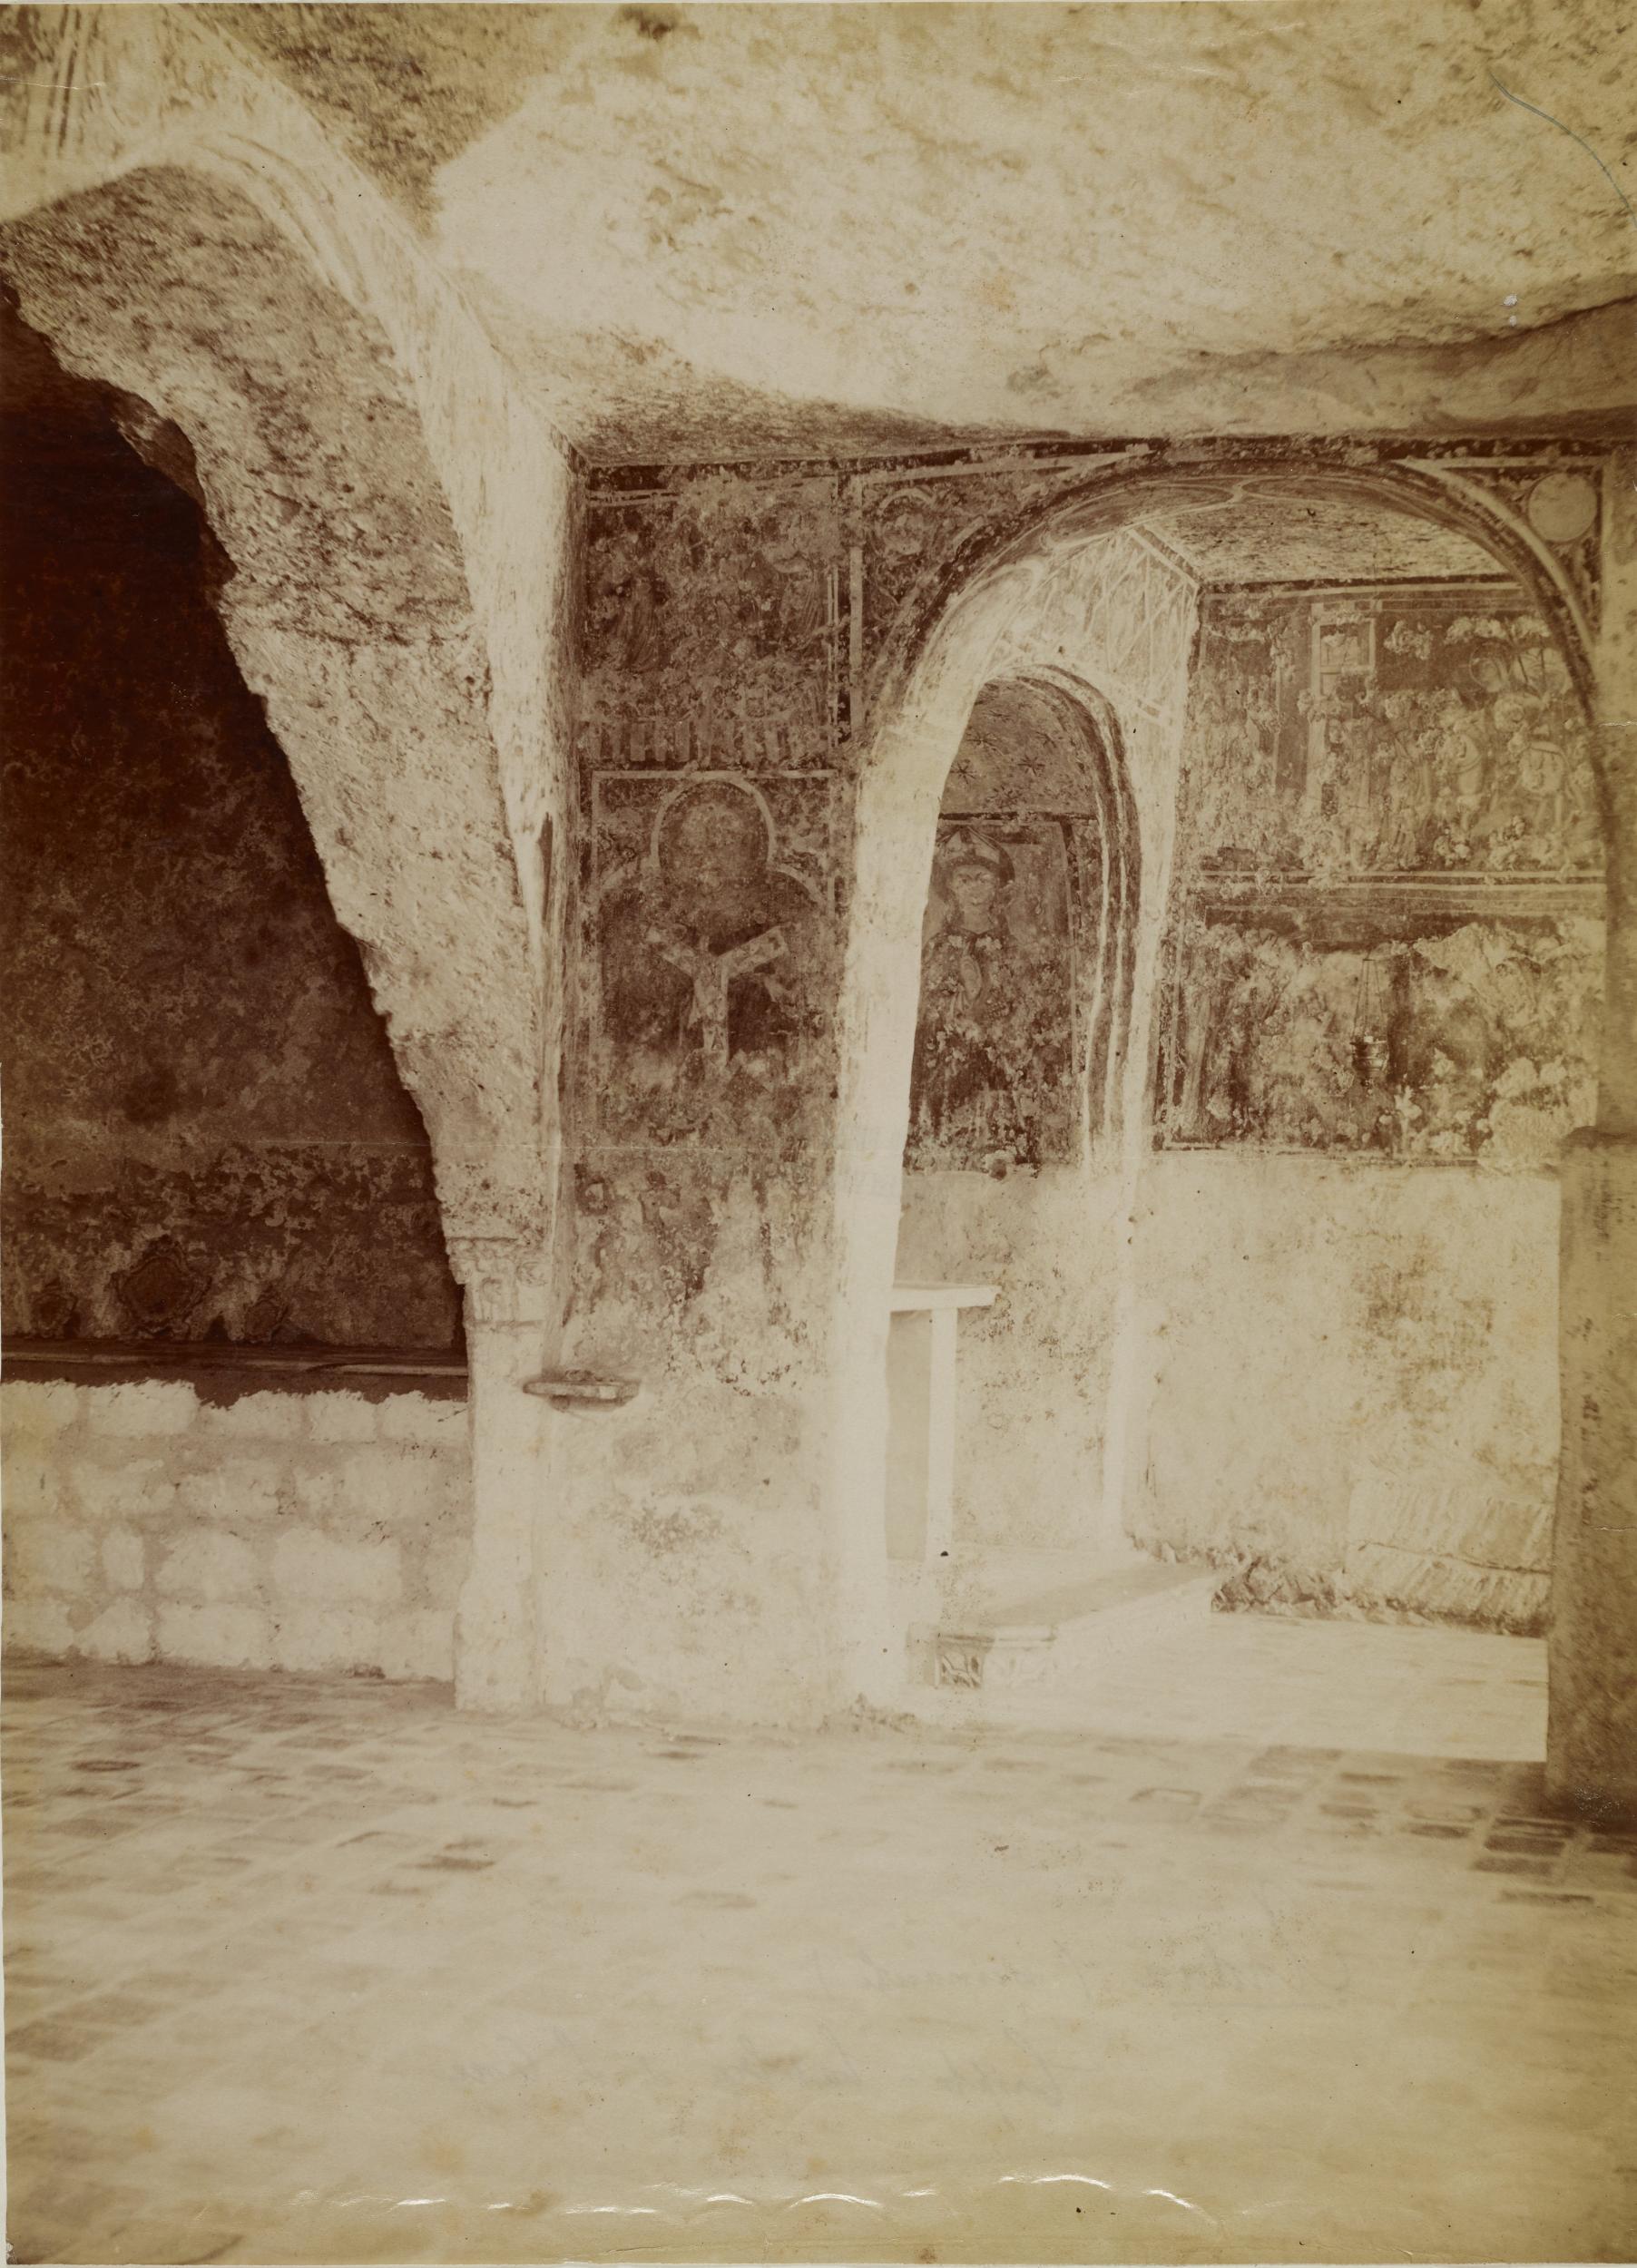 Fotografo non identificato, Andria - Chiesa di S. Croce, cripta, 1876-1900, albumina/carta, MPI131855